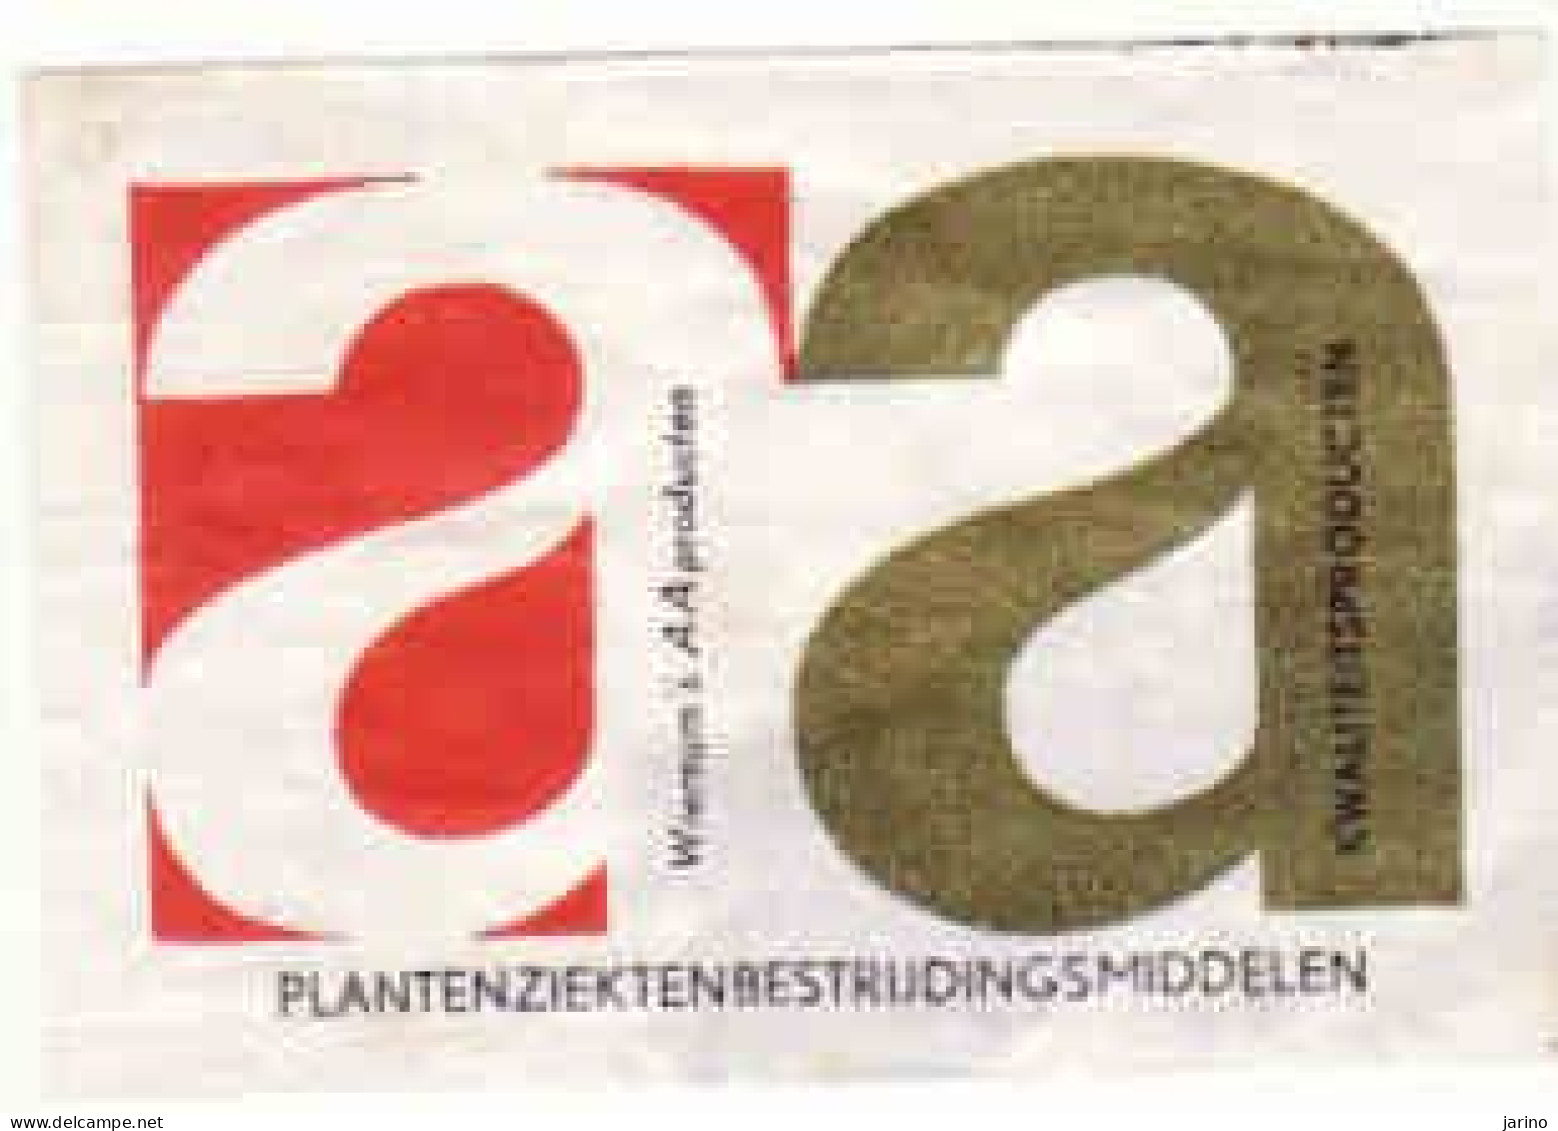 Dutch Matchbox Label, A A Wiersum's A A Producten, Plantenziekten Bestrijdingsmiddelen, Holland, Netherlands - Boites D'allumettes - Etiquettes